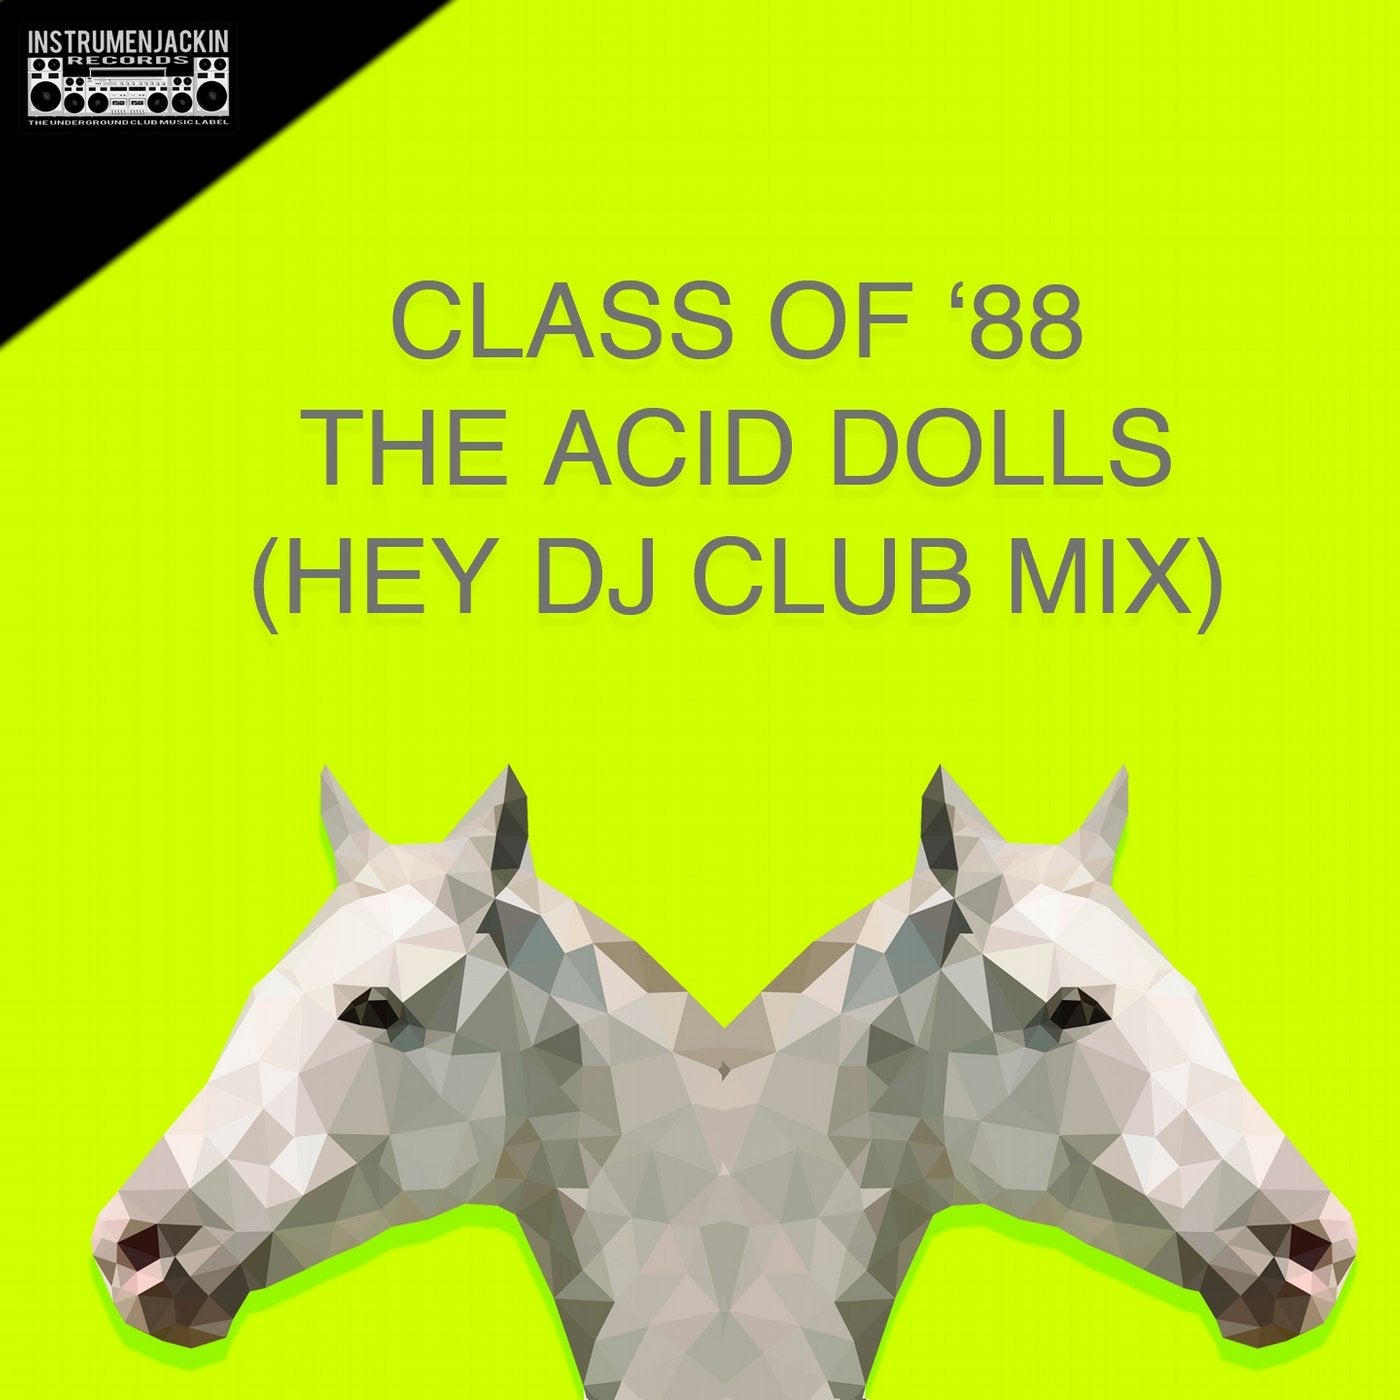 The Acid Dolls (Hey DJ Club Mix)